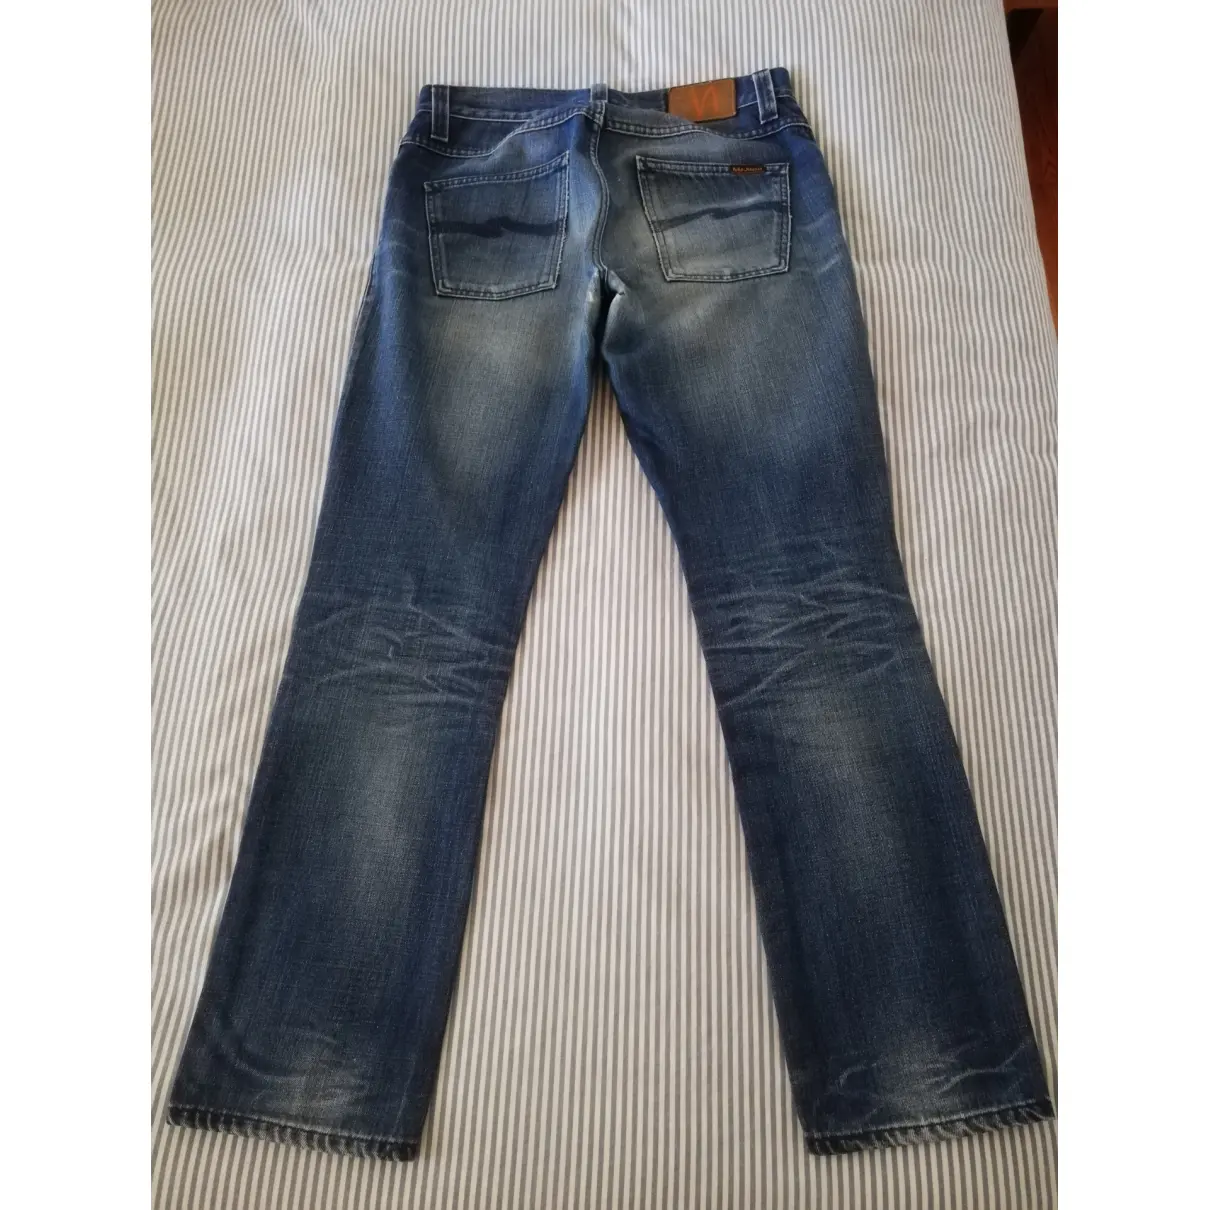 Buy NUDIE JEANS Straight jeans online